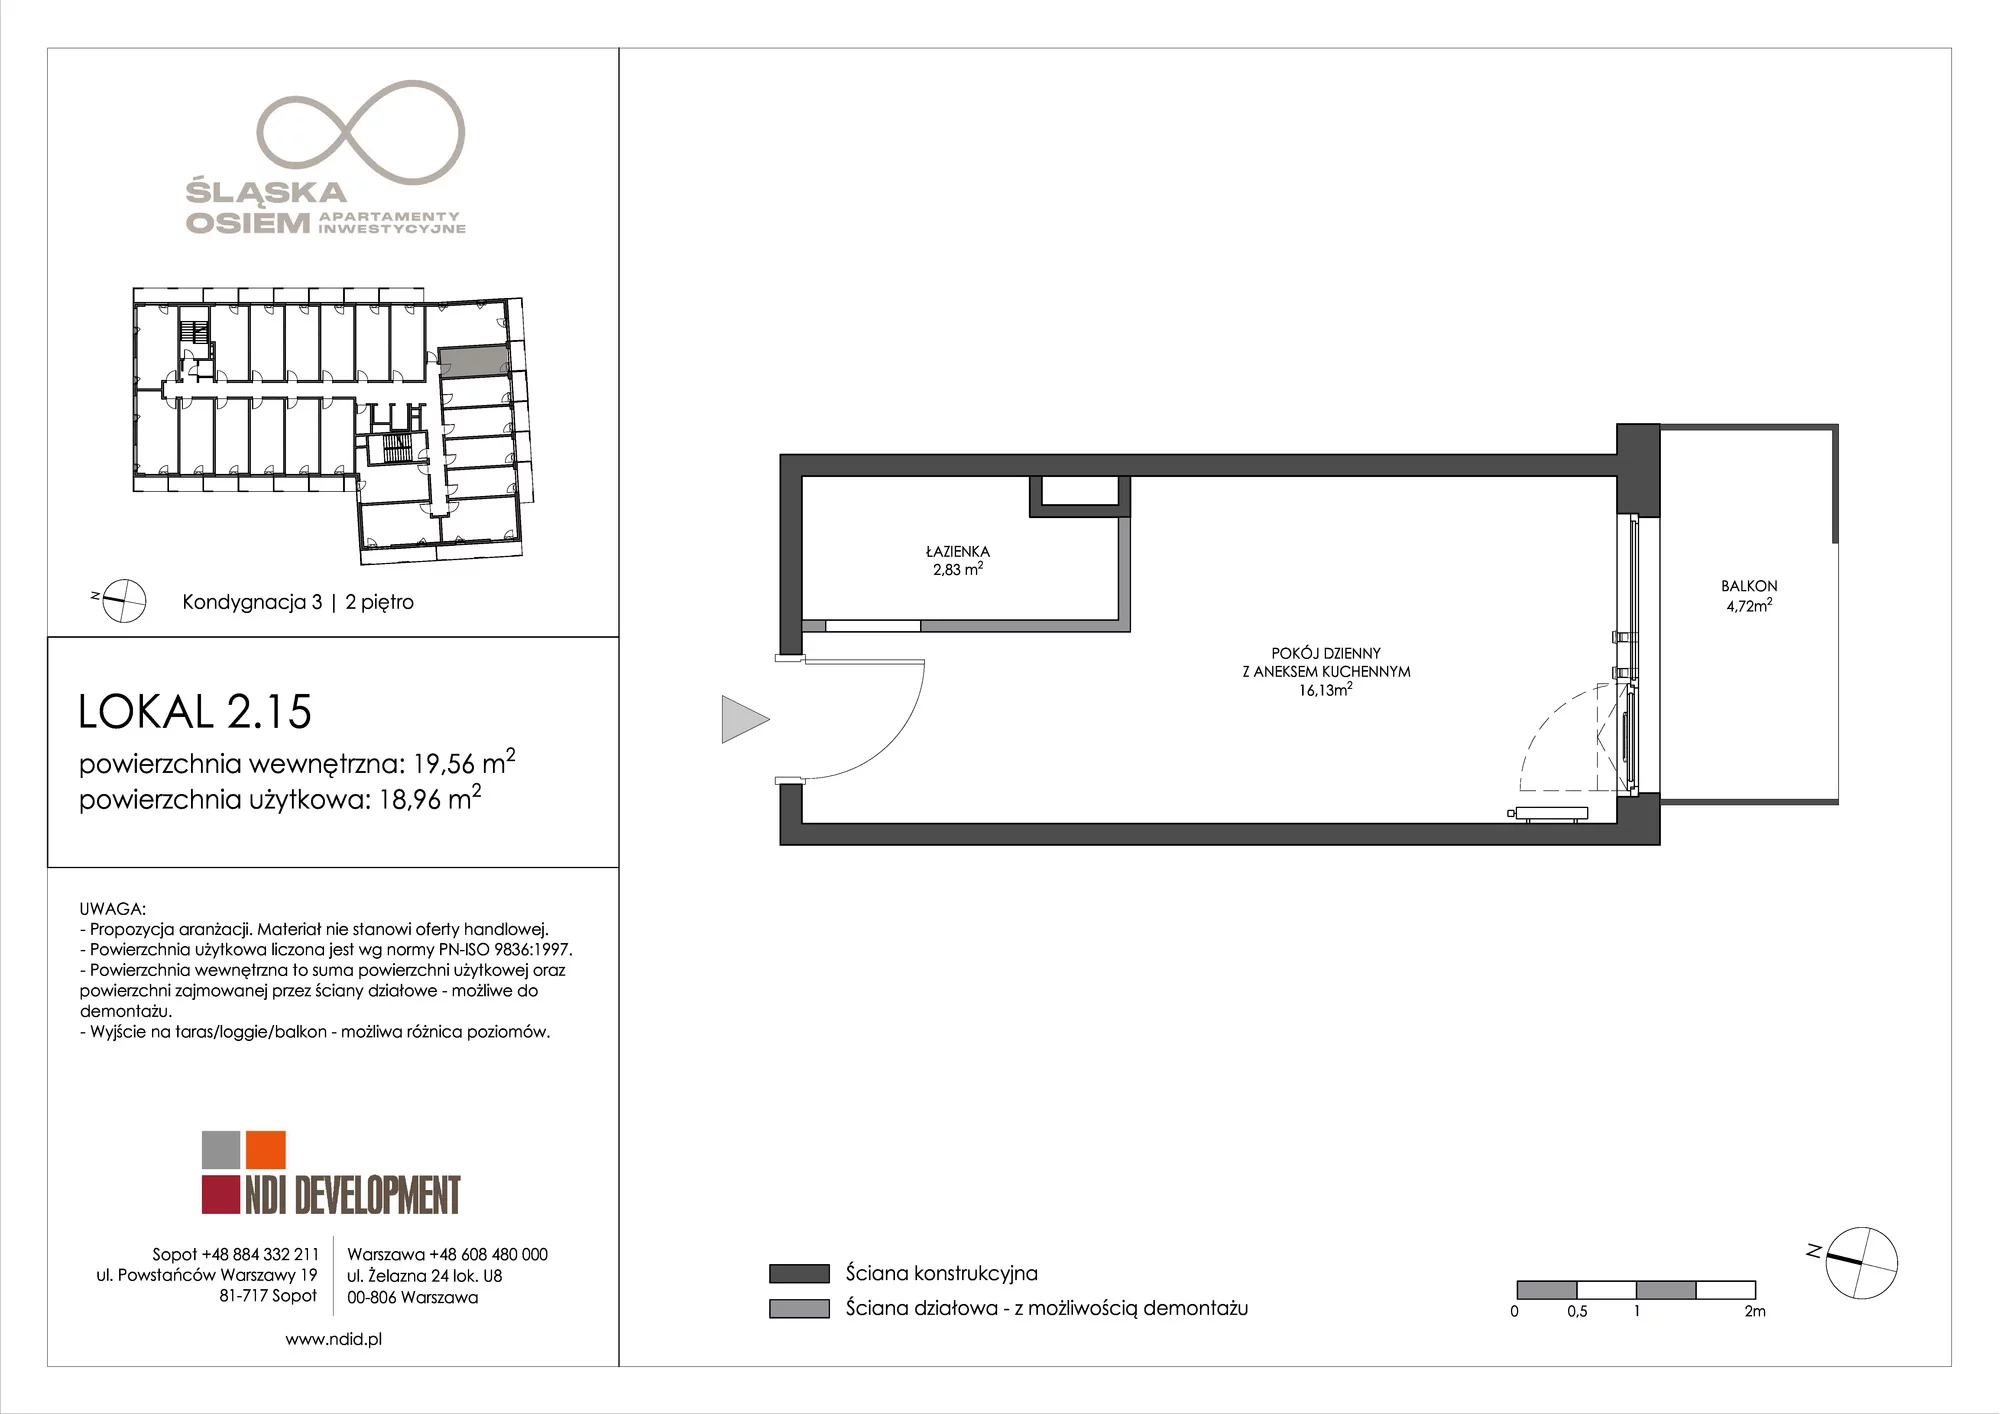 Apartament inwestycyjny 19,56 m², piętro 2, oferta nr 2.15, Śląska Osiem, Gdańsk, Przymorze, ul. Śląska 8